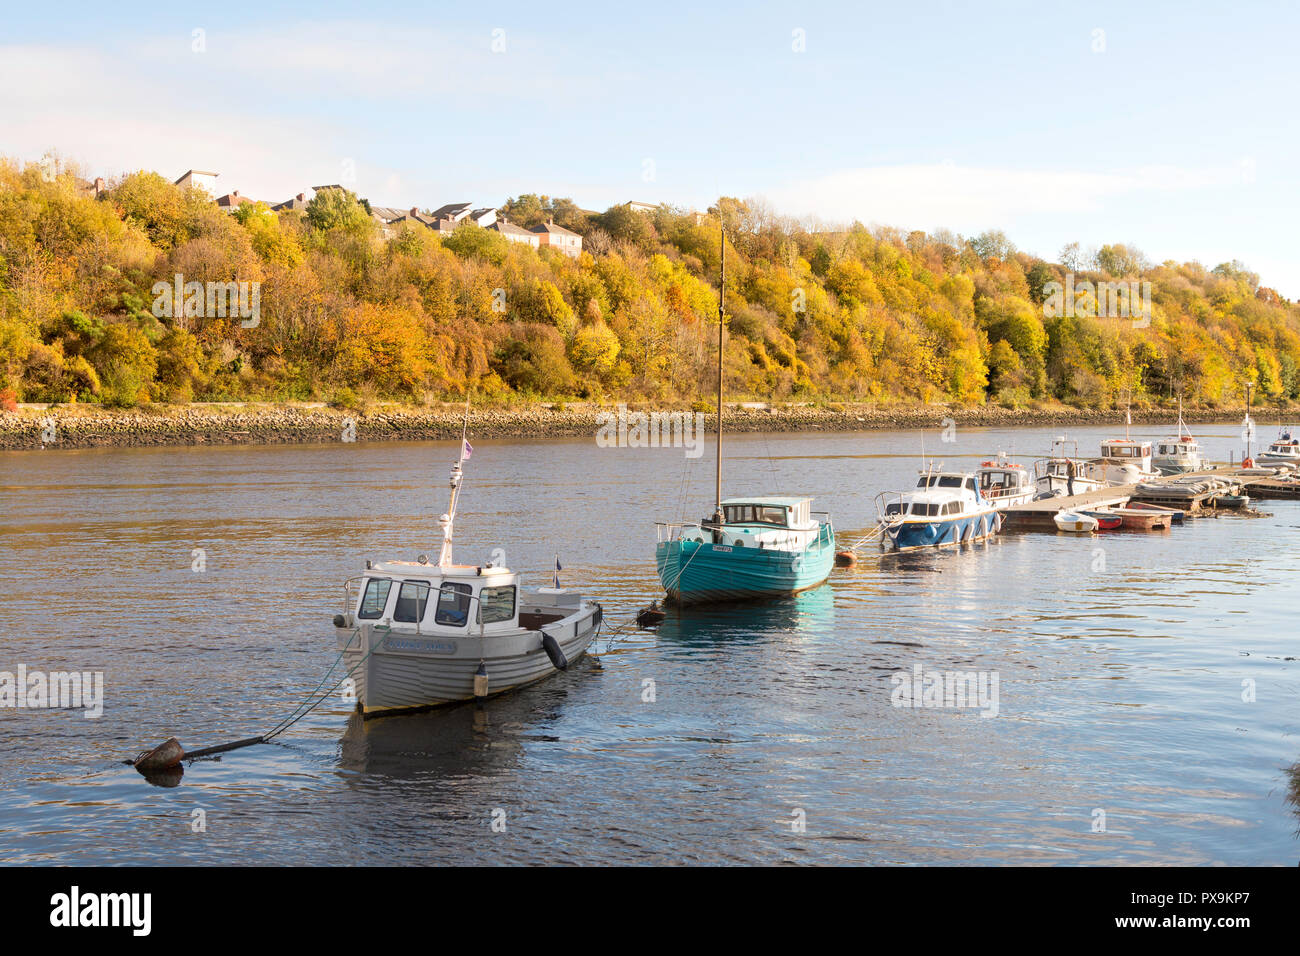 Bateaux amarrés dans la rivière Tyne au Friars Goose Club de sports nautiques, à Gateshead, England, UK Banque D'Images